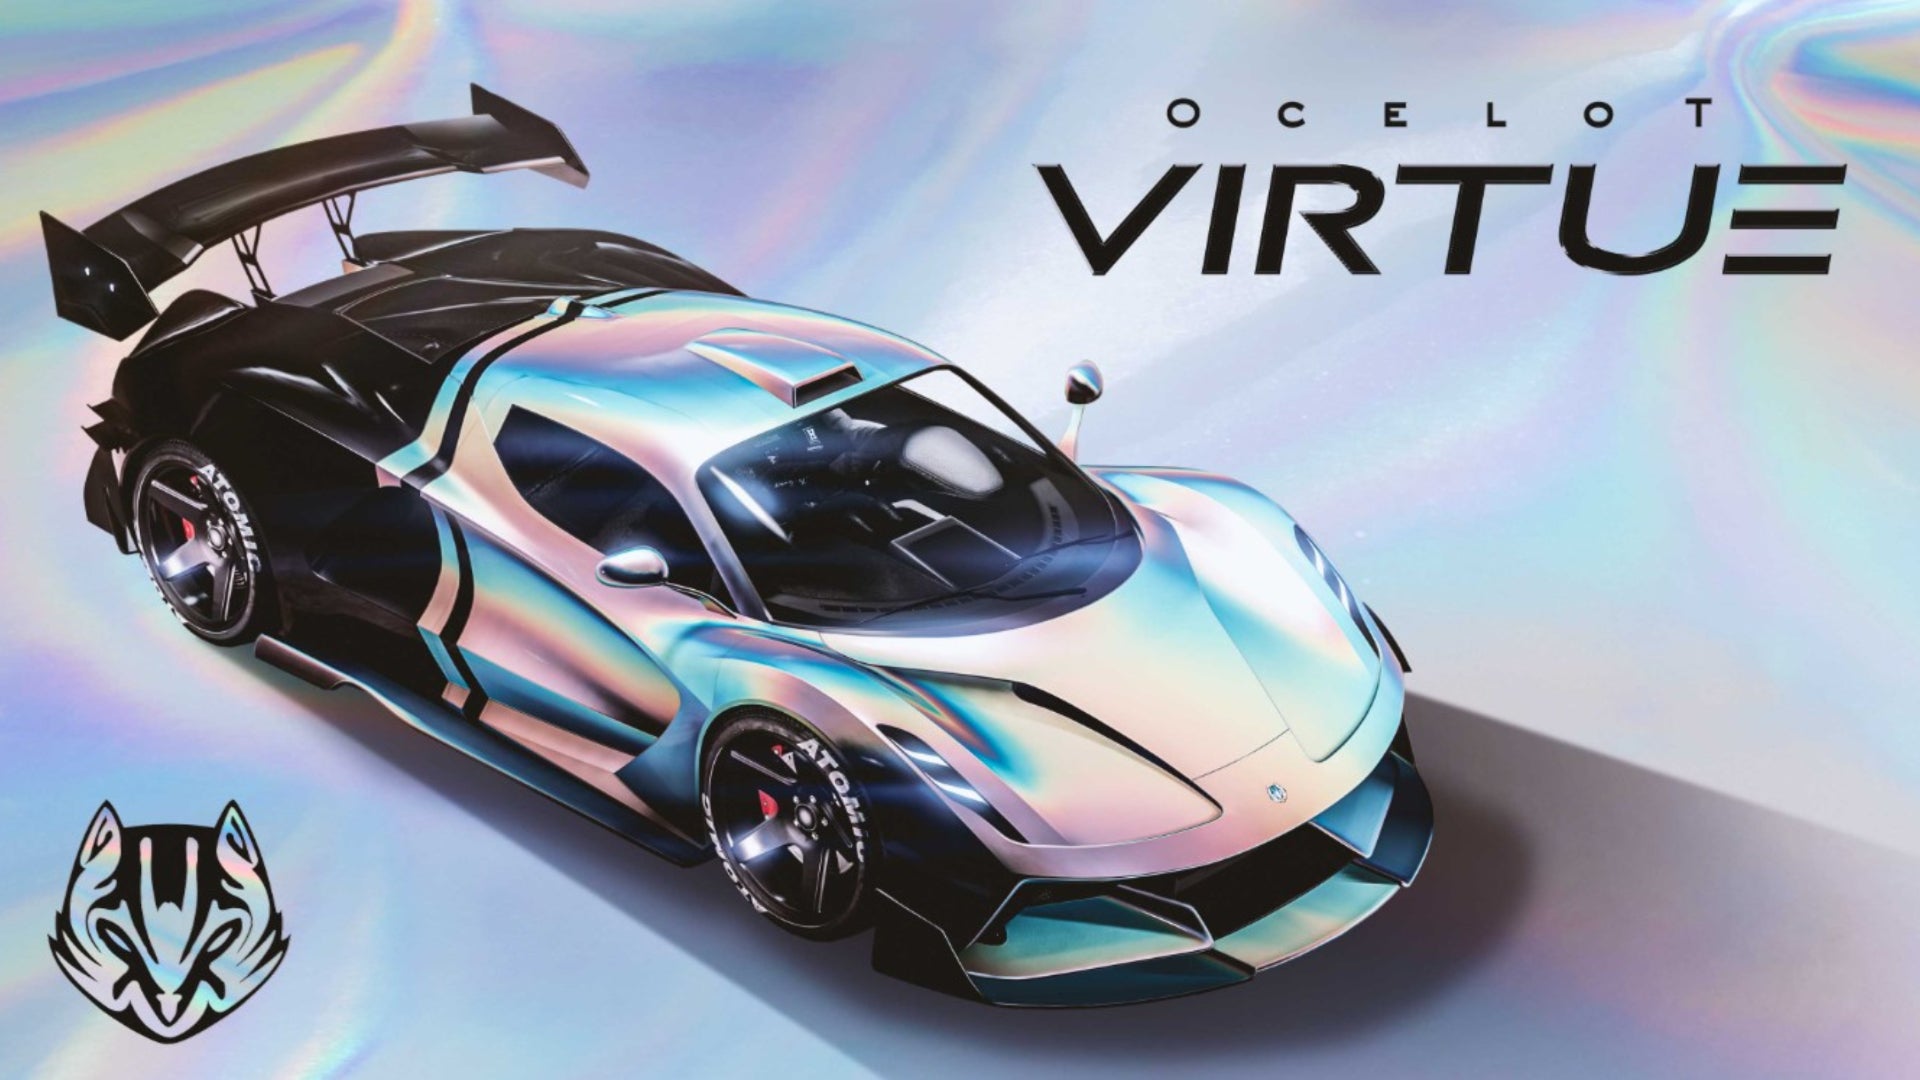 GTA Online, offizielles Newswire-Bild von Ocelot Virtue